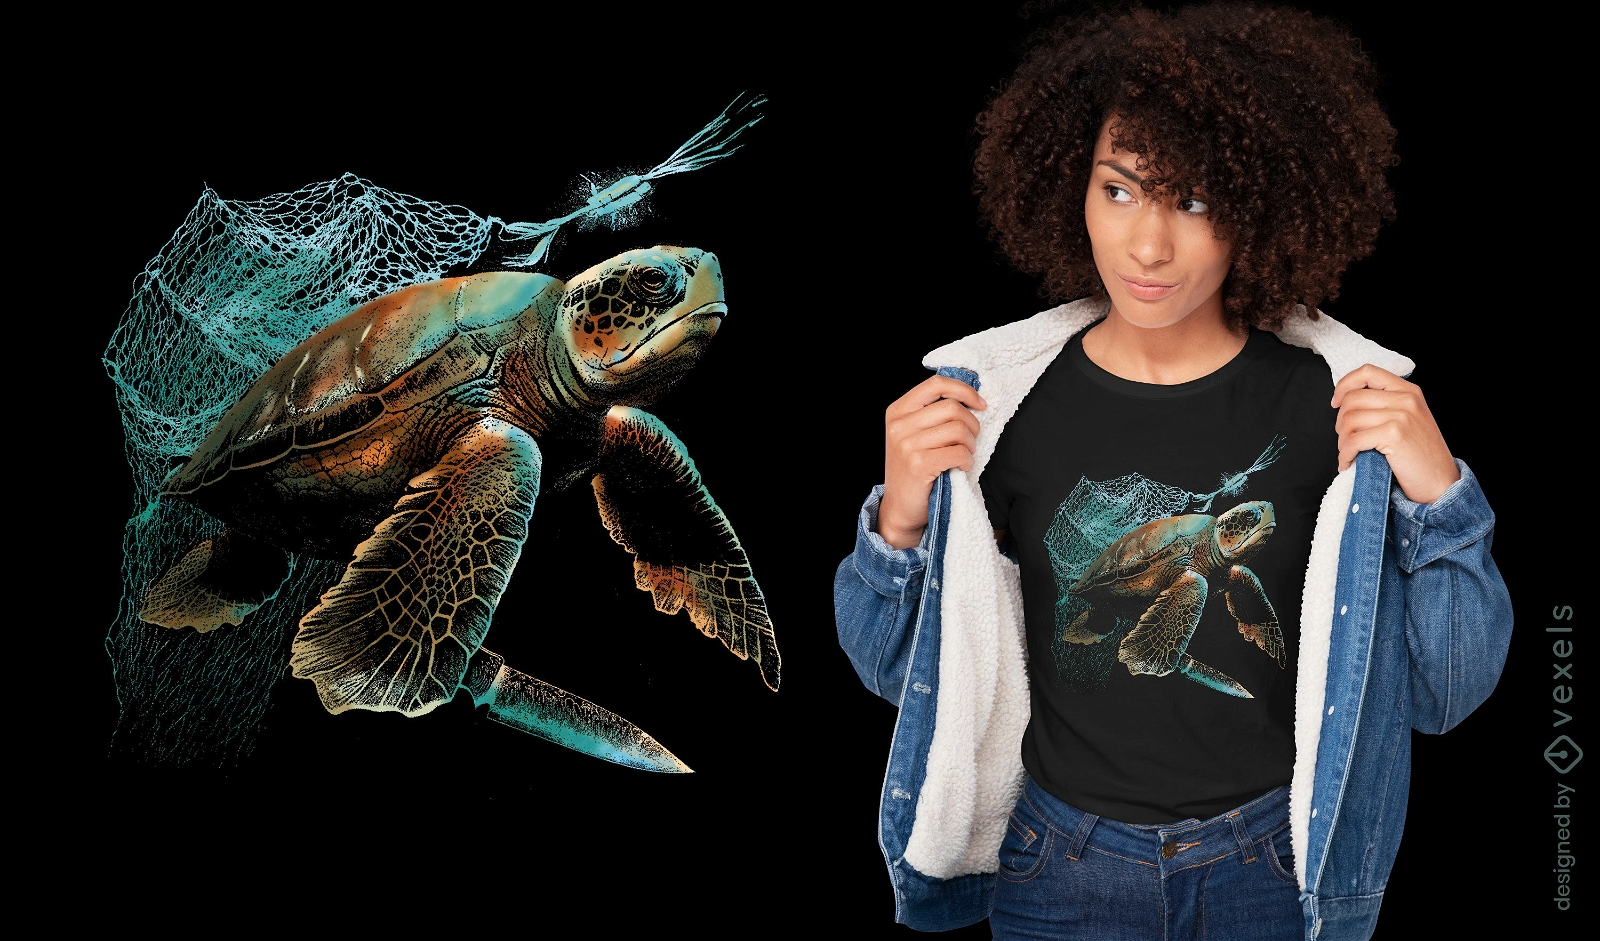 Dise?o de camiseta de conservaci?n de tortugas marinas.